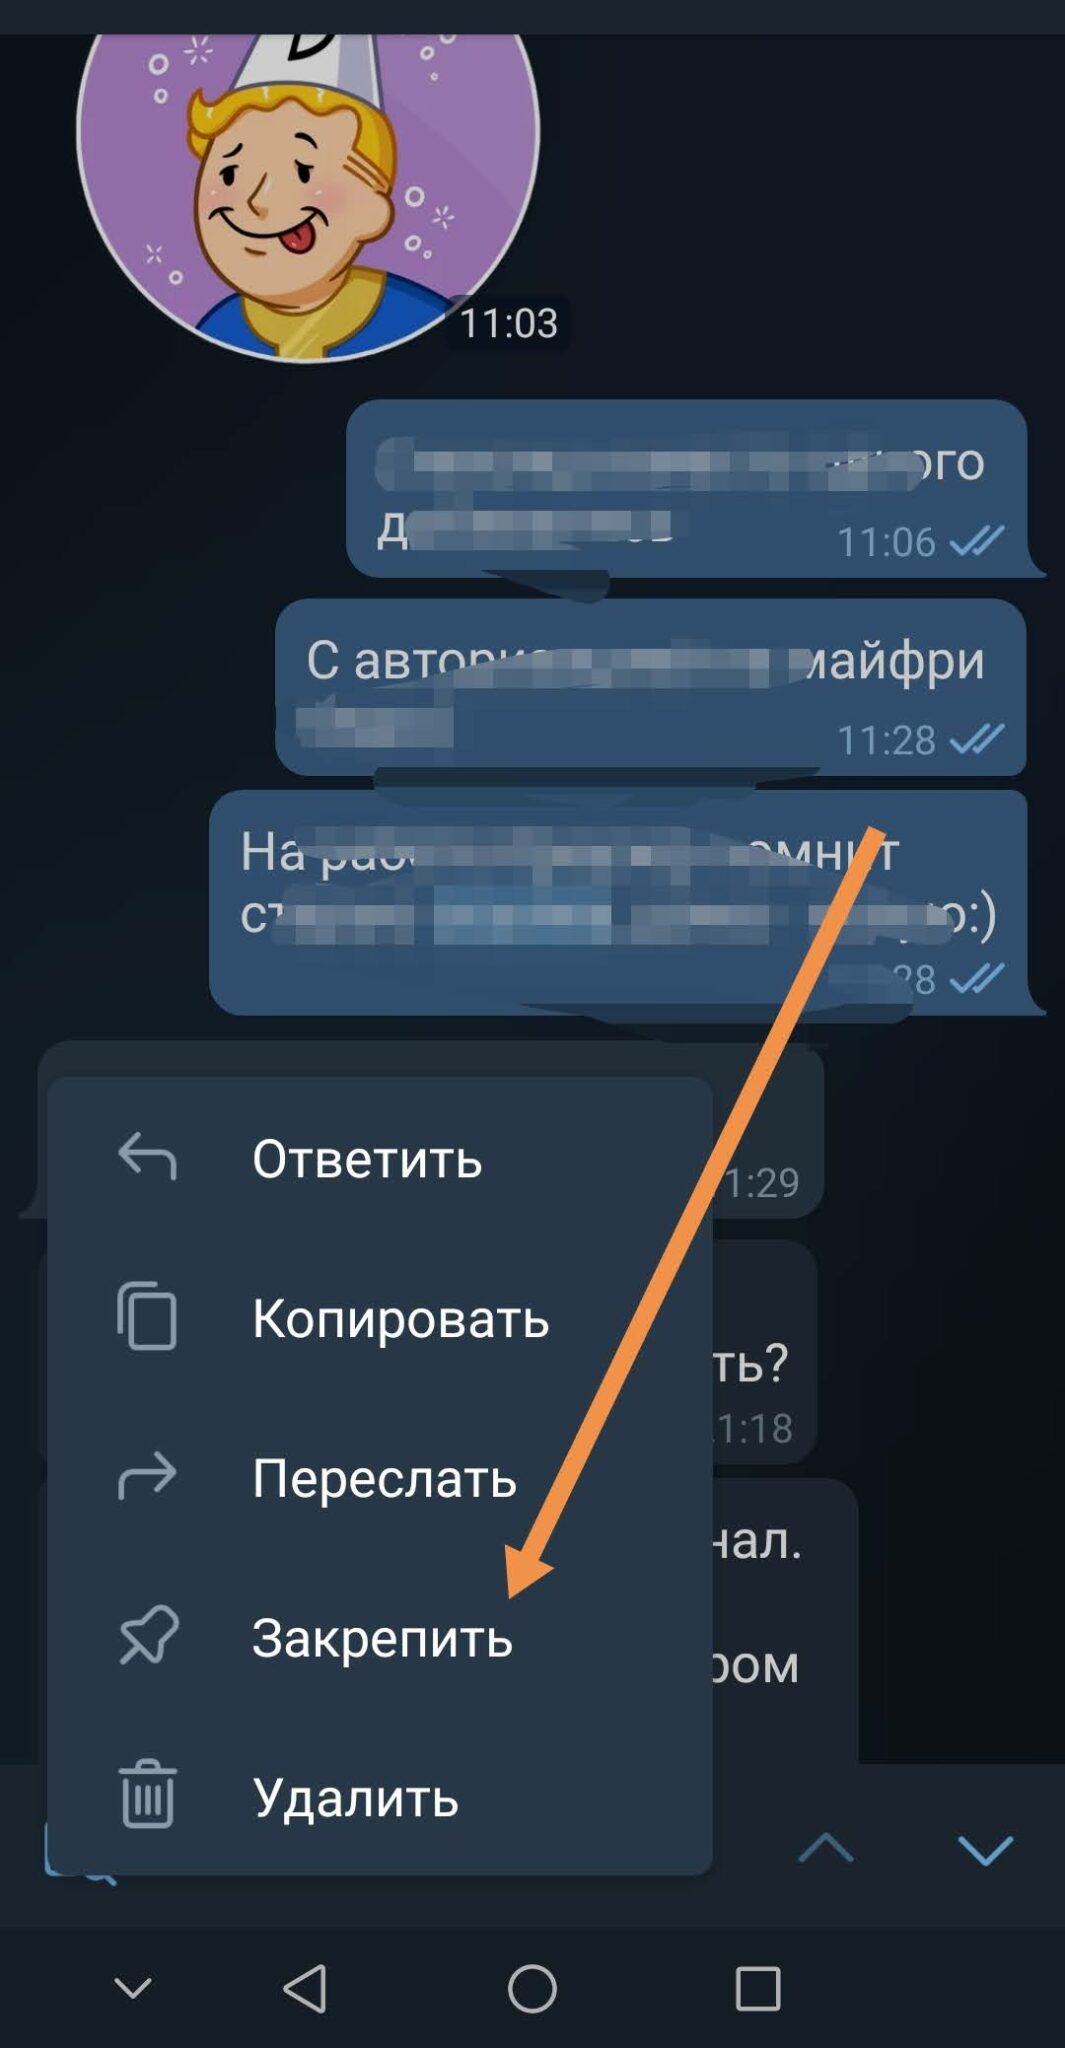 Код россии для мобильного телеграмм телефона с мобильного бесплатно фото 76